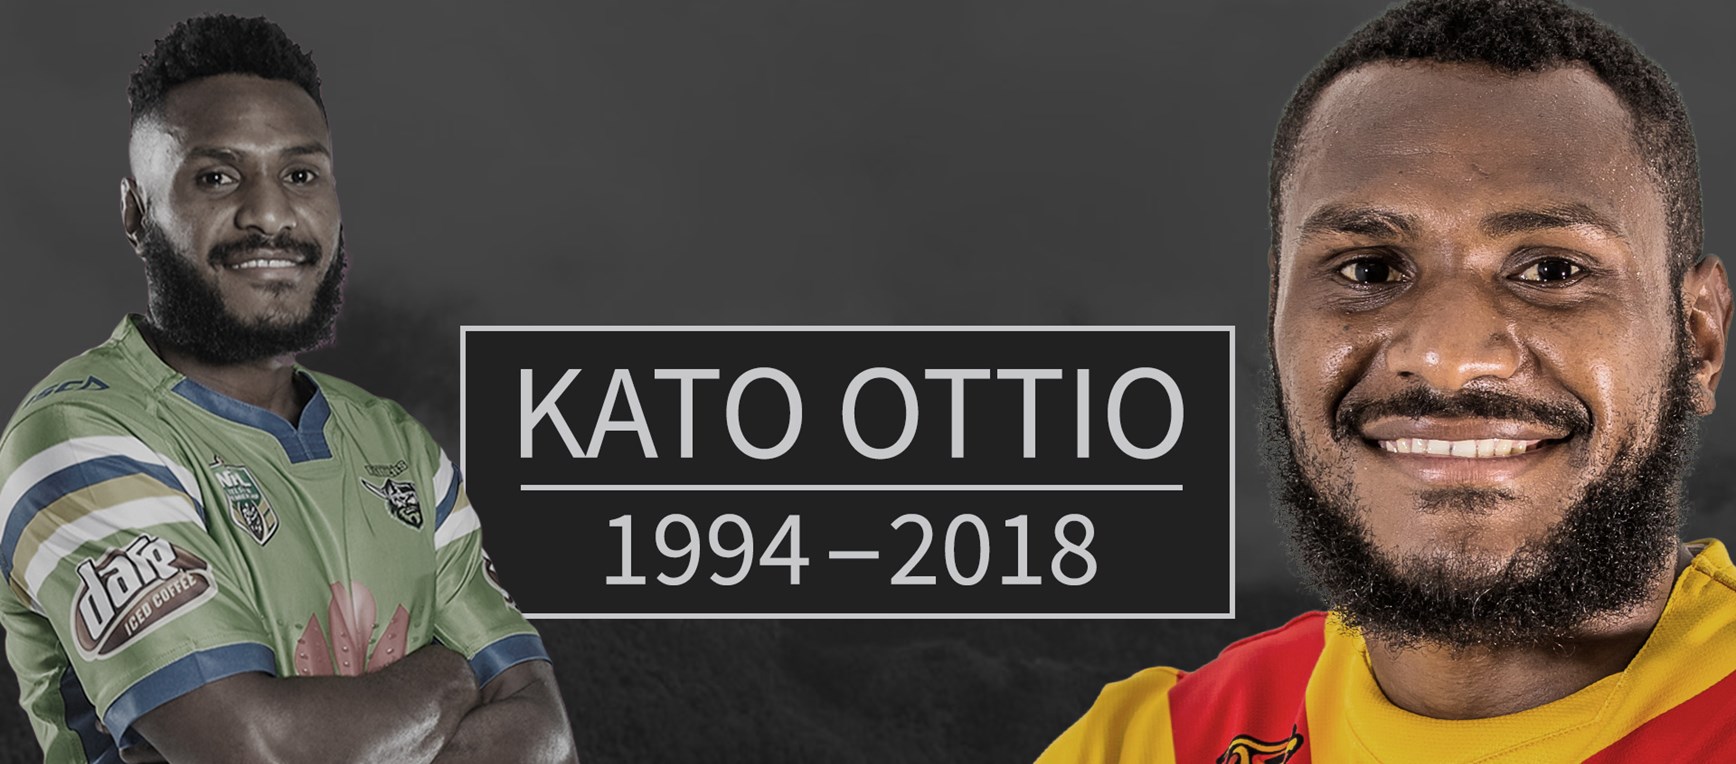 Kato Ottio 1994-2018